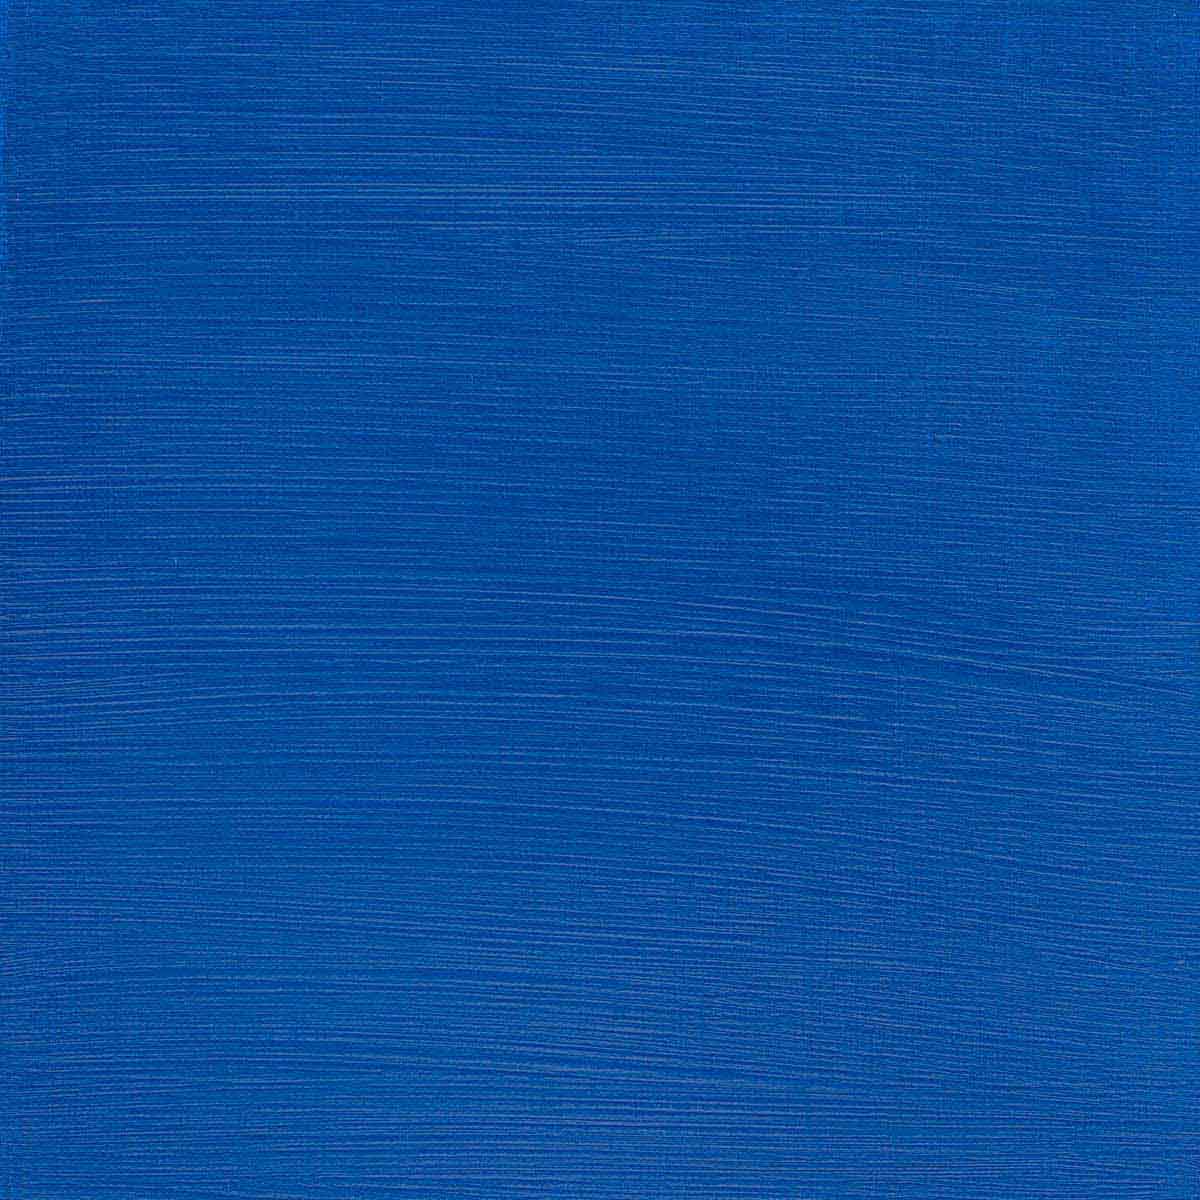 Winsor et Newton - Couleur acrylique des artistes professionnels - 60 ml - chrome bleu céruléen